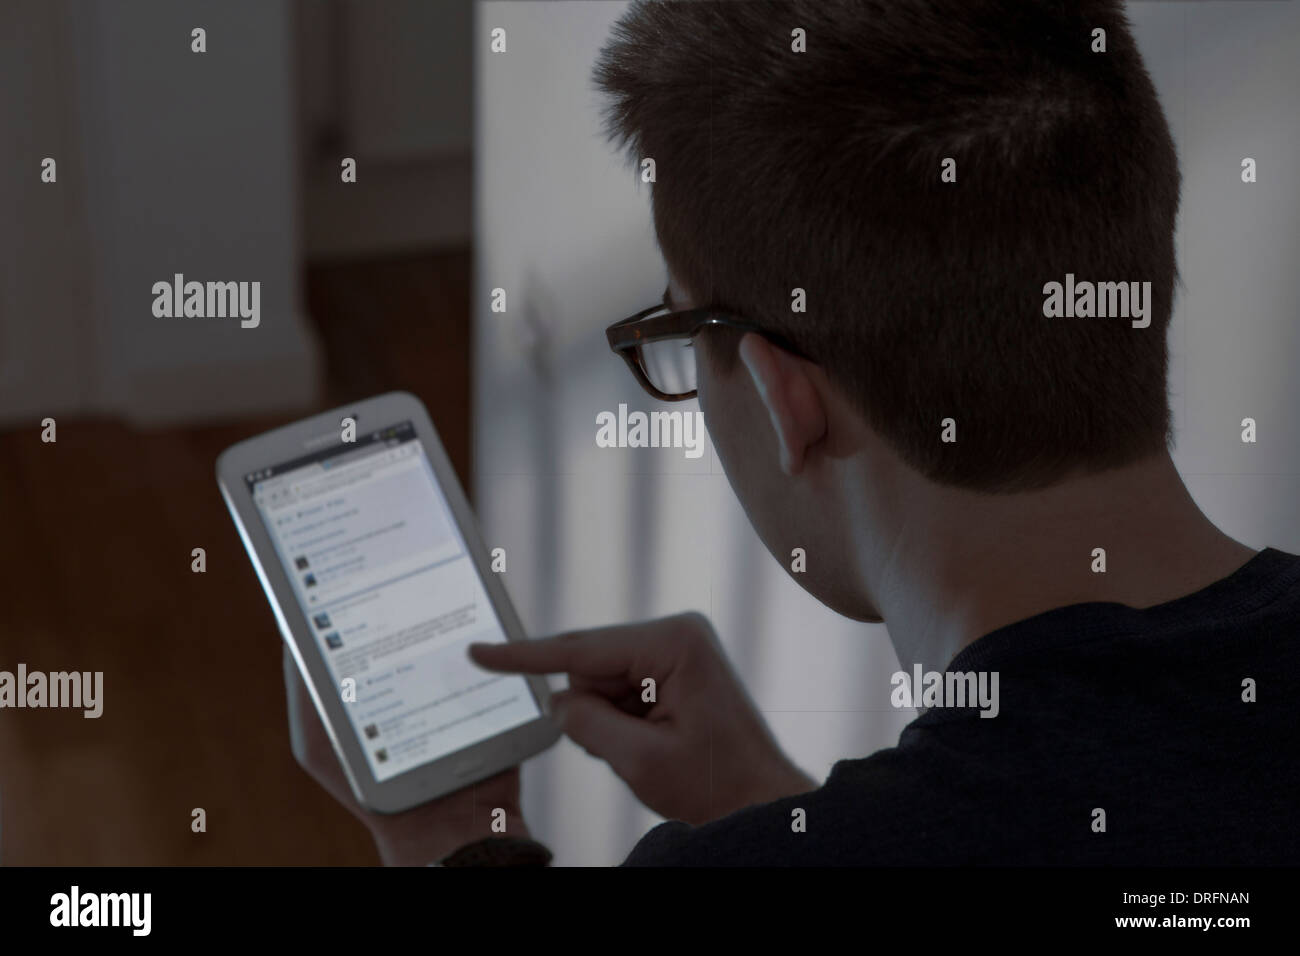 Junger Mann mit Brille sitzen mit einem Mini-digital-Tablette.  Ansicht von hinten über die Schulter geschossen. Networking-Website. Stockfoto